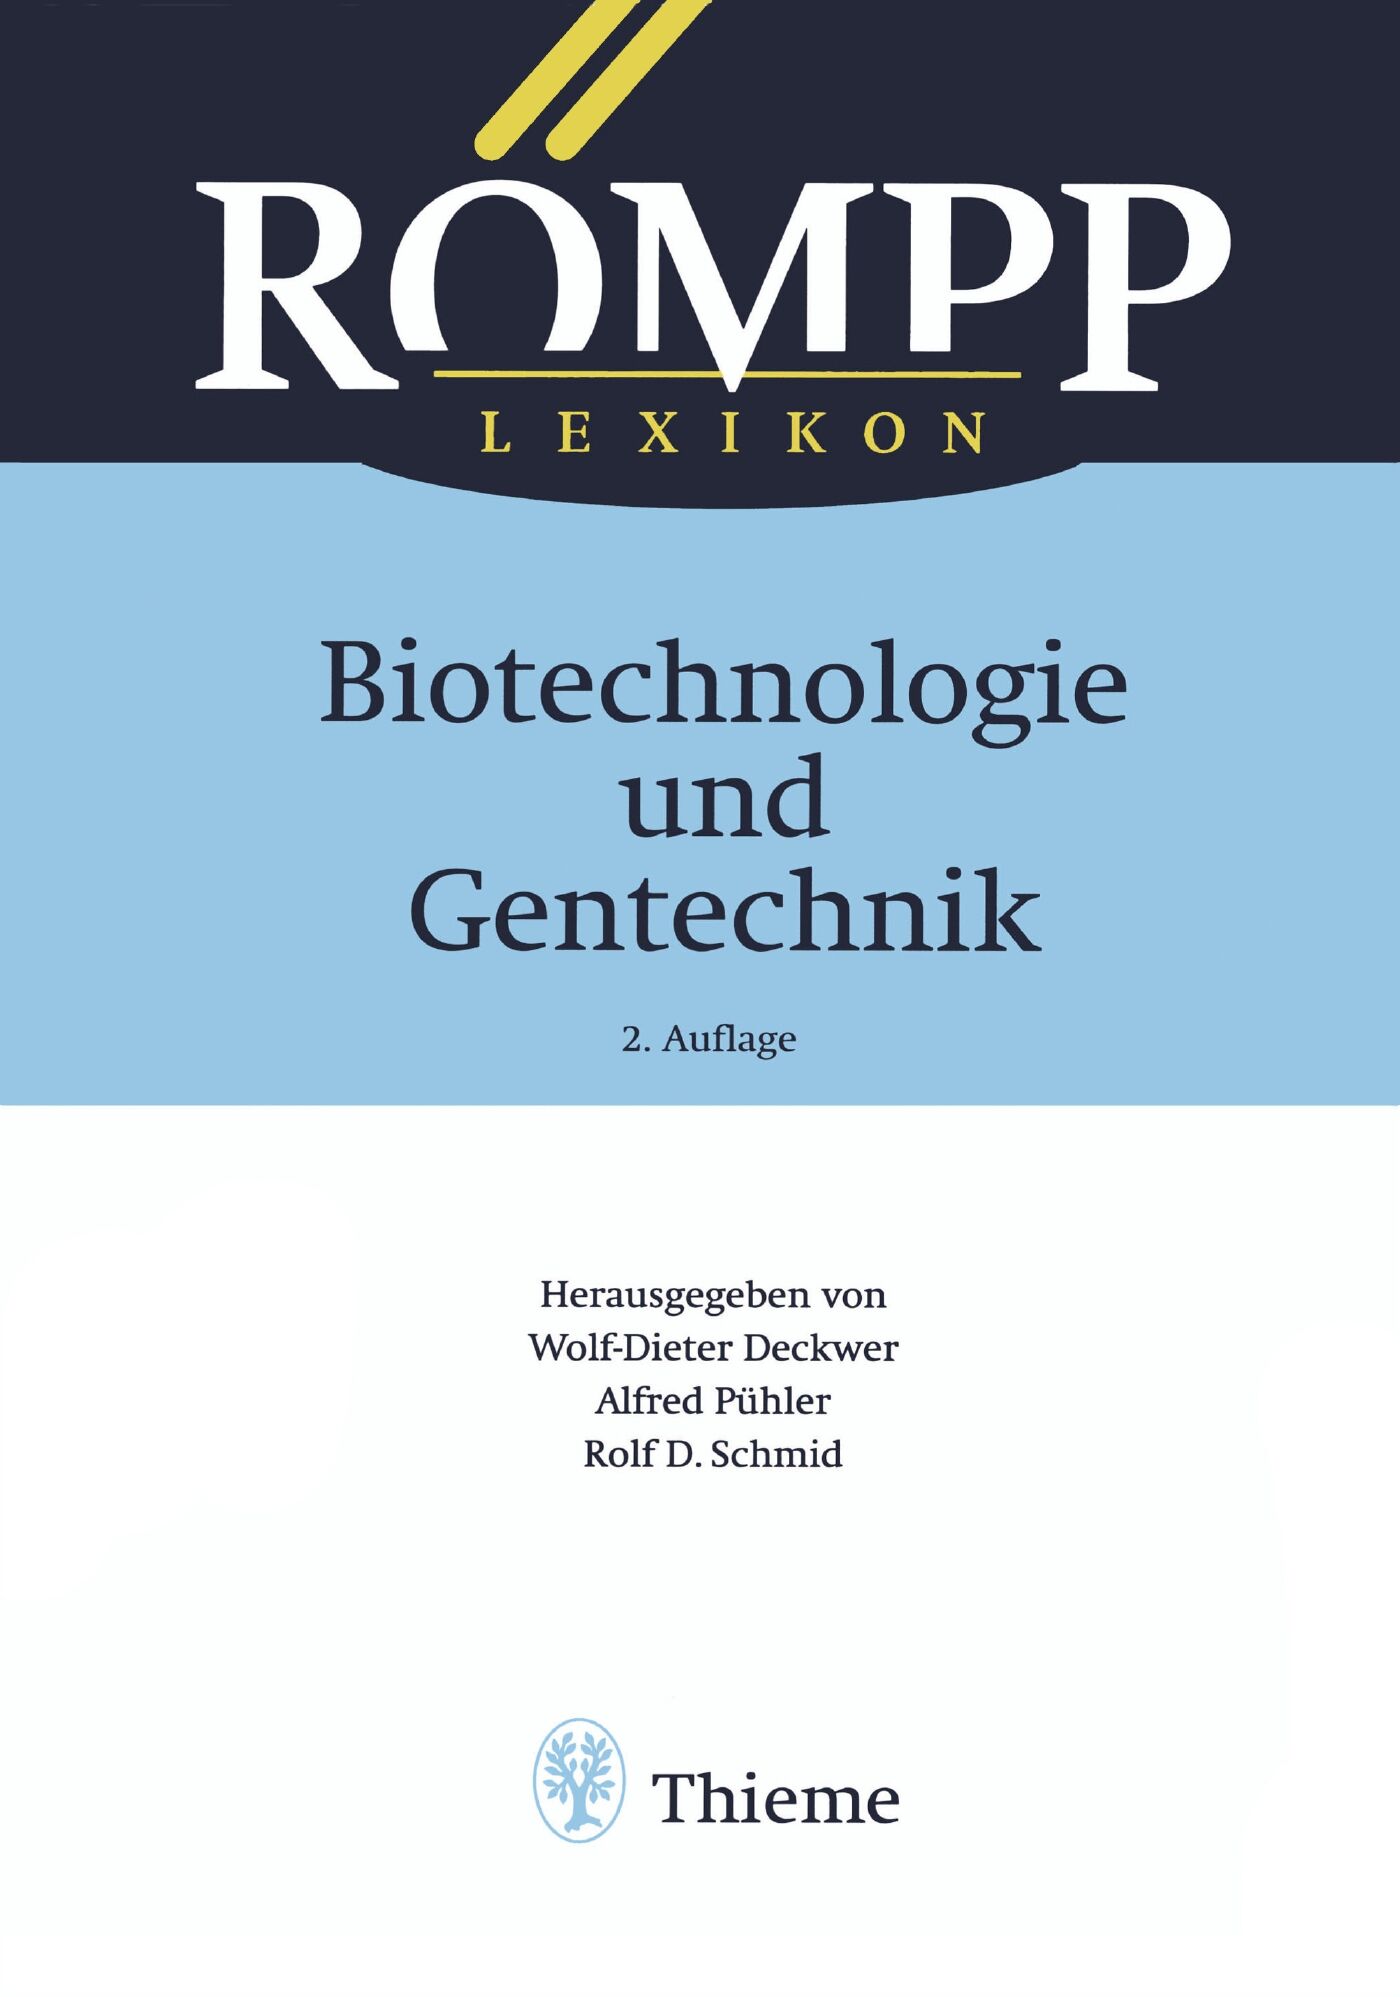 RÖMPP Lexikon Biotechnologie und Gentechnik, 2. Auflage, 1999, 9783131795724